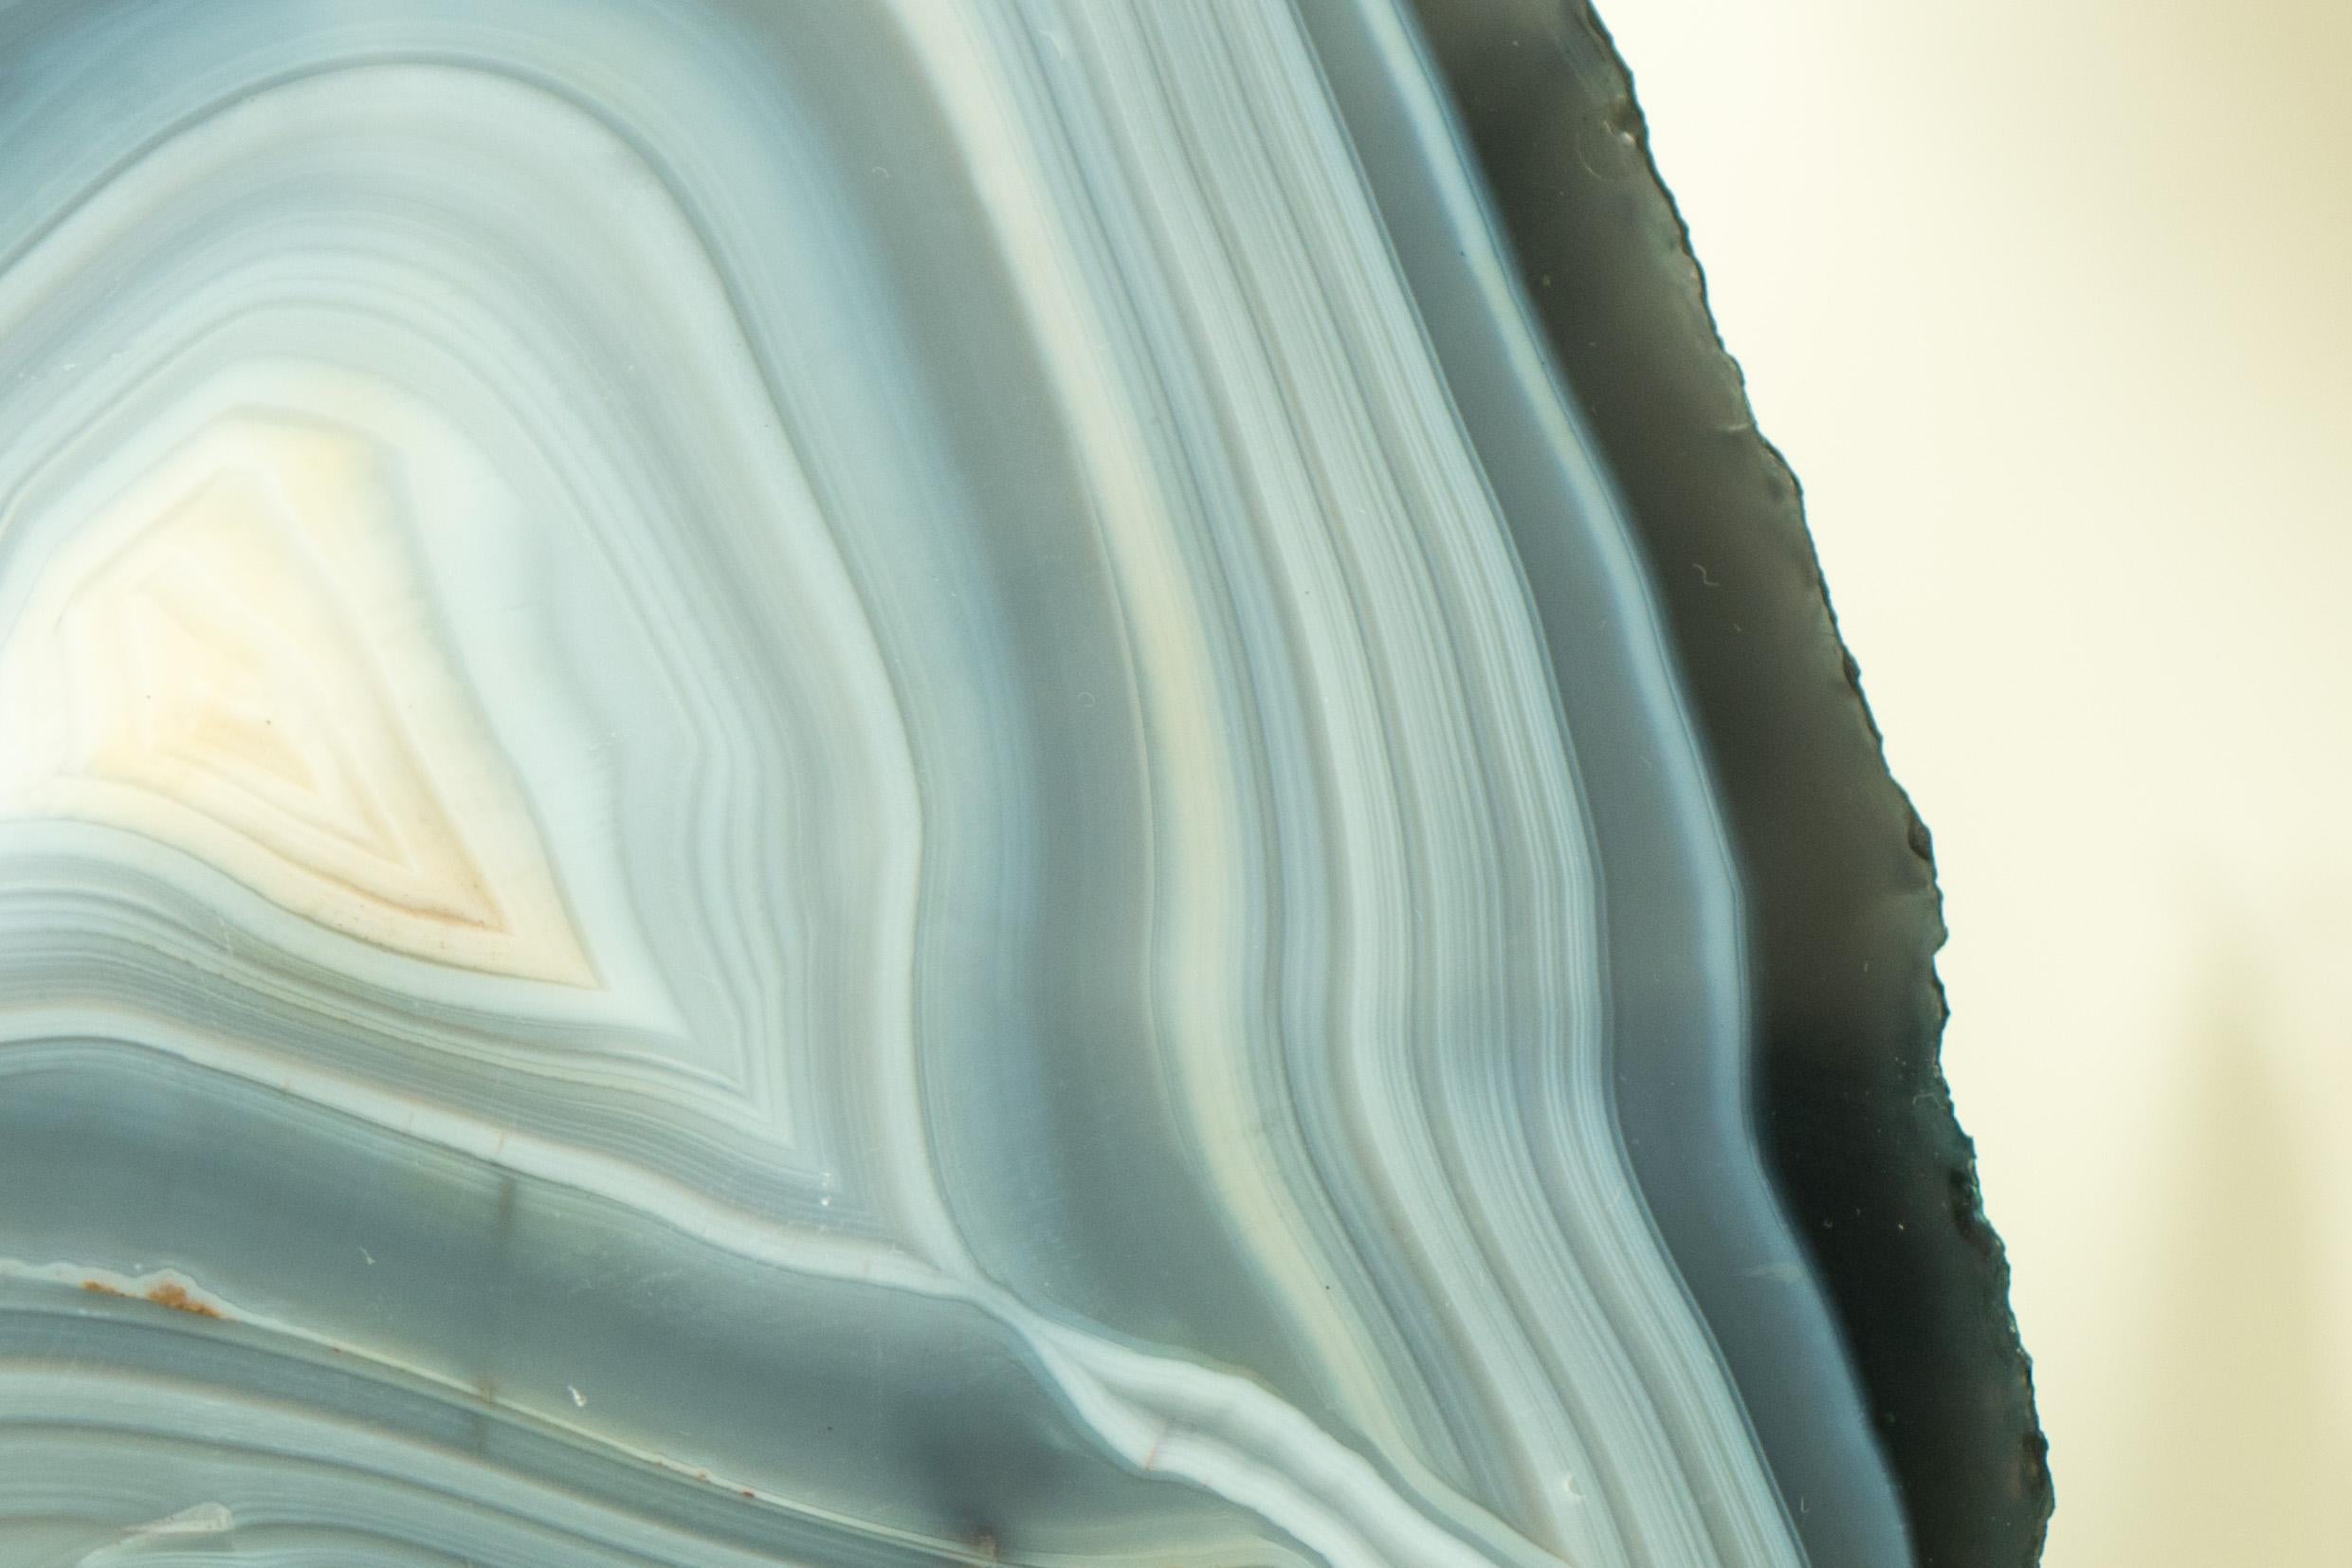 Magnifique et présentant de superbes lacets d'agate bleue et blanche (également connue sous le nom de Blue Lace Agate), cette géode d'agate présente des bandes d'agate blanche et bleue rarement vues qui encerclent l'ensemble de la géode. Il s'agit